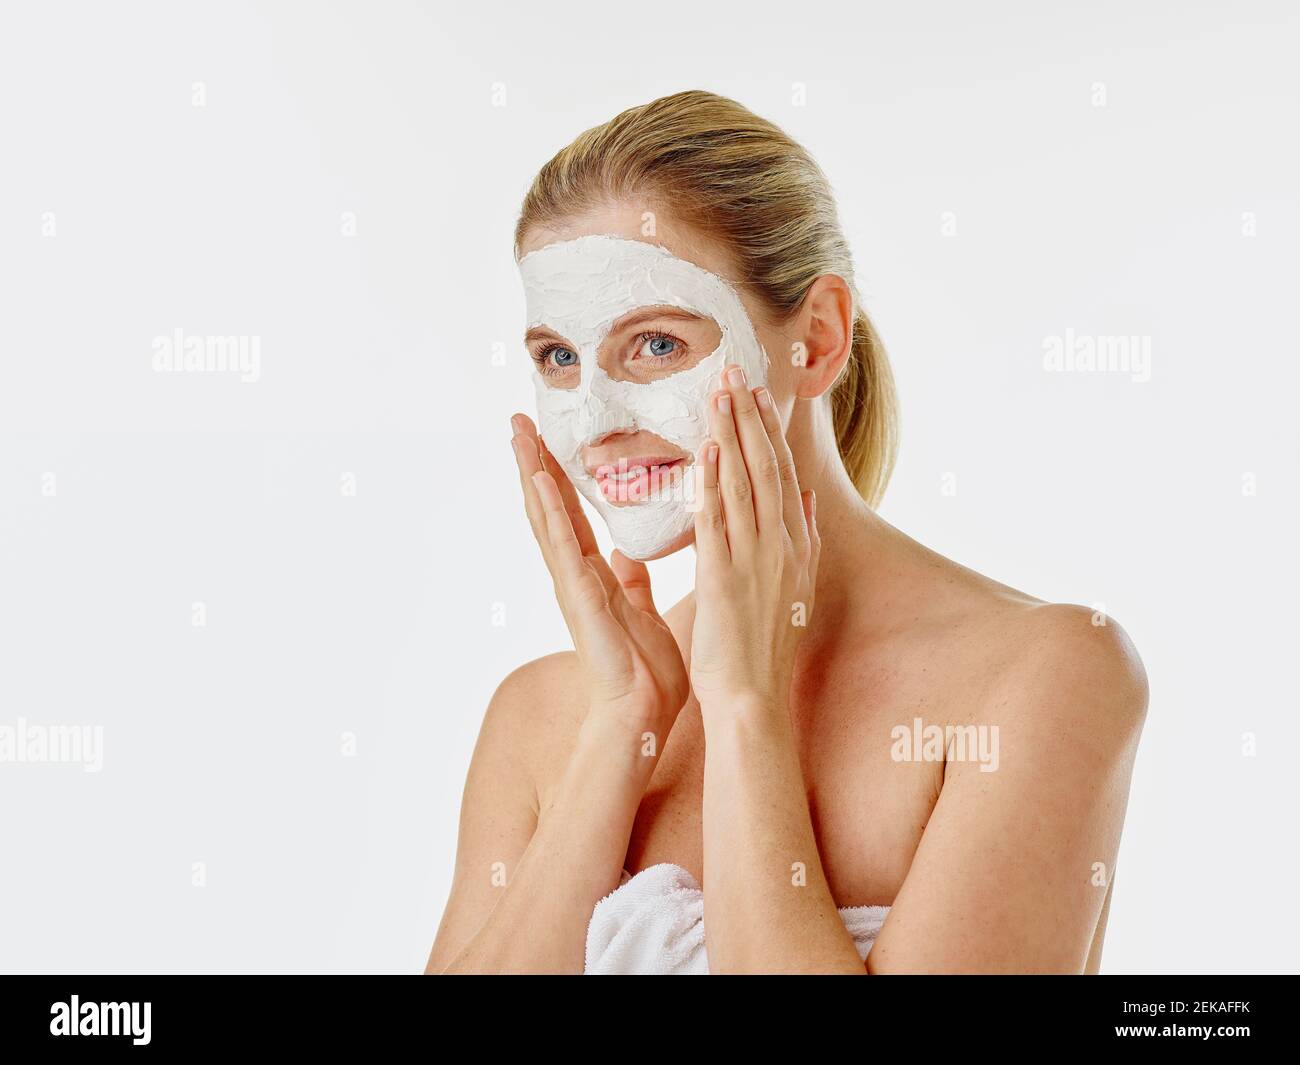 Femme souriante enveloppée d'une serviette appliquant un masque facial Banque D'Images